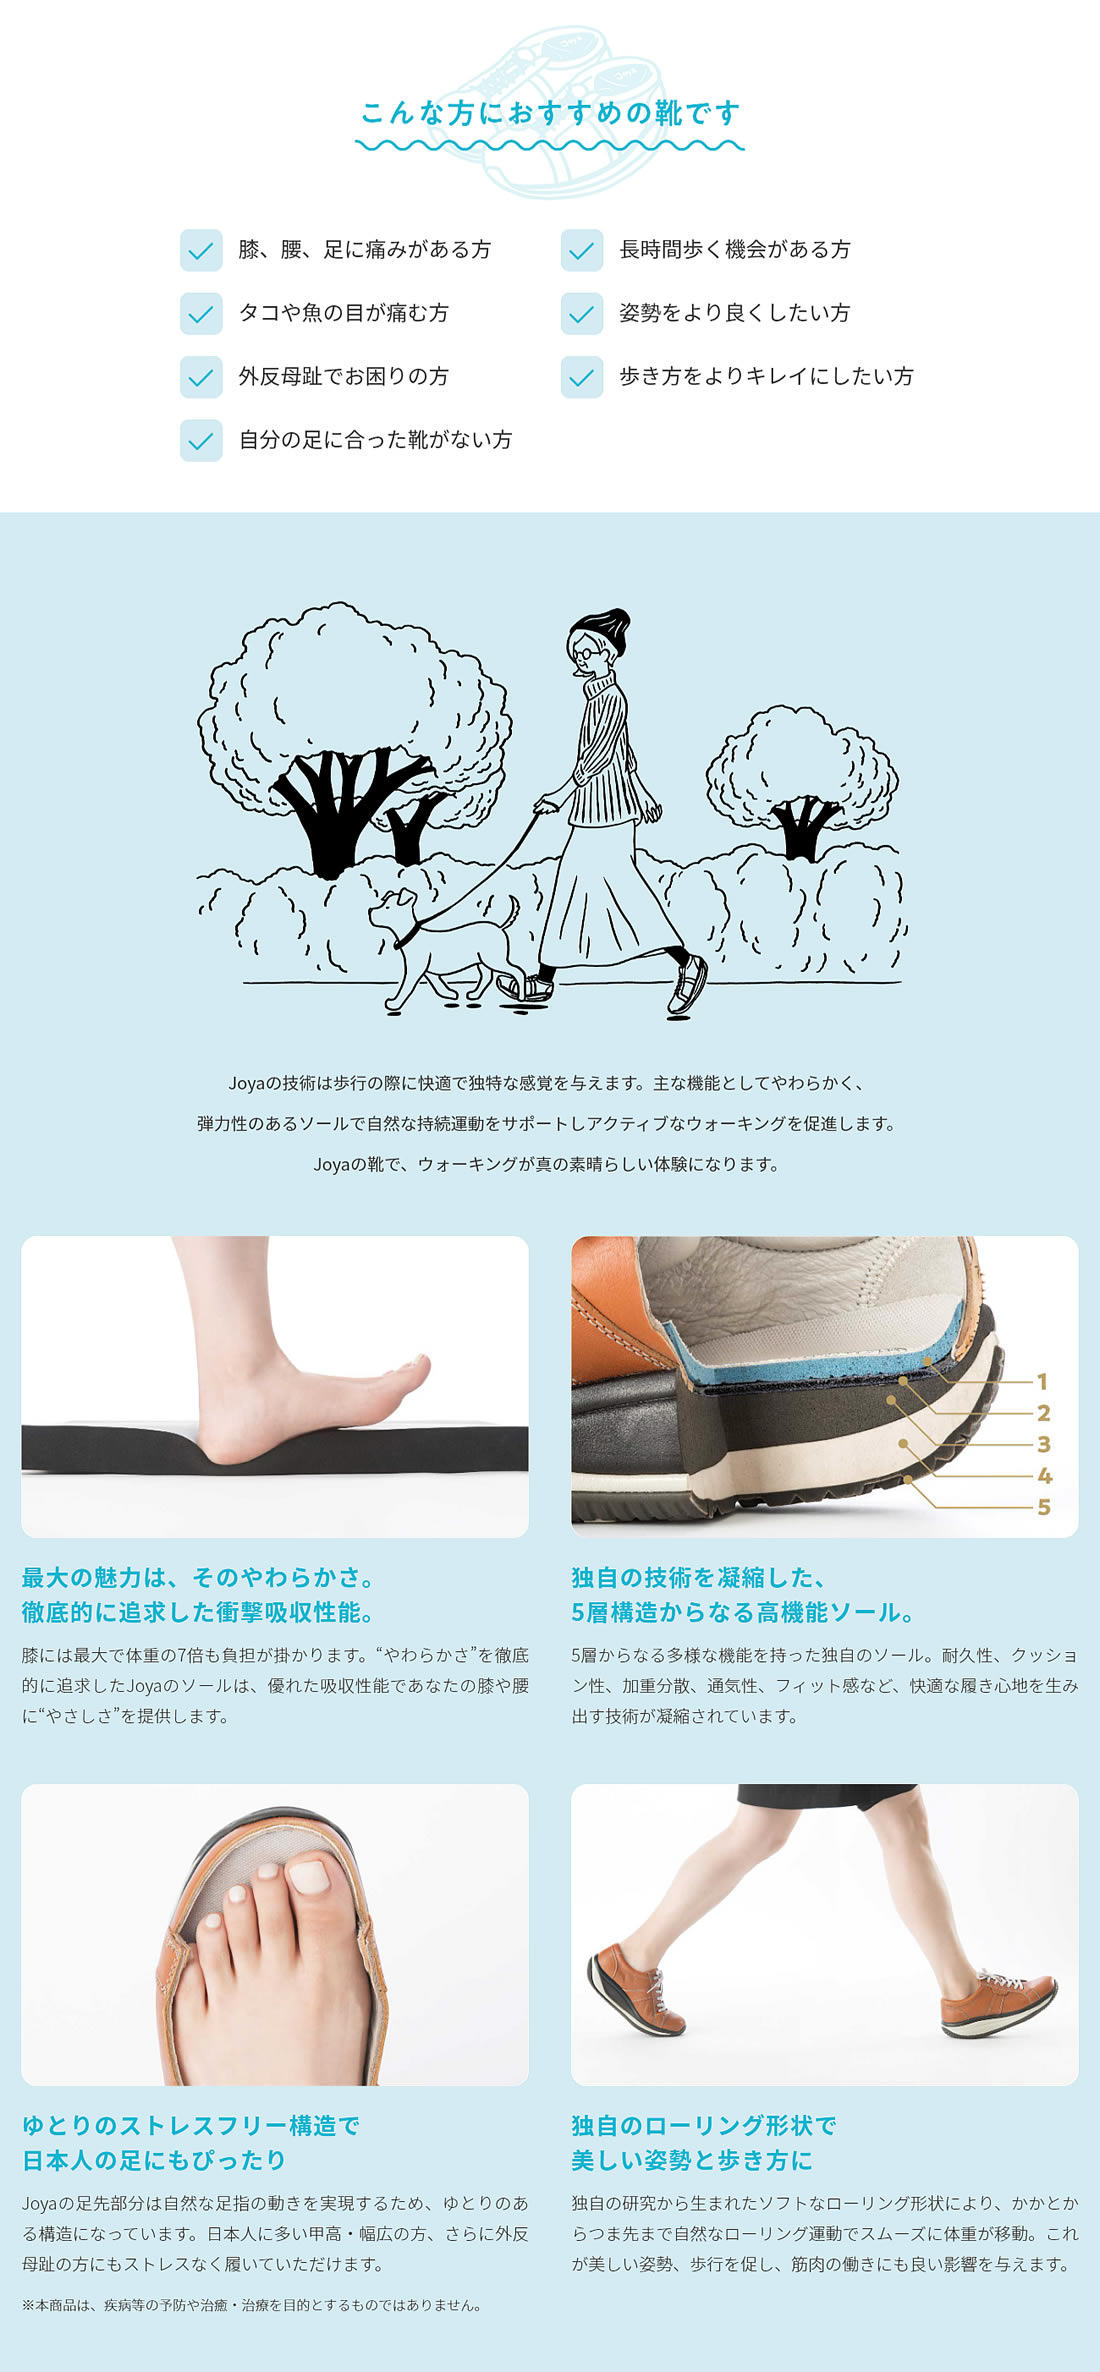 Yokohama Black 膝、腰に驚くほどやさしい やわらかい履き心地の靴 